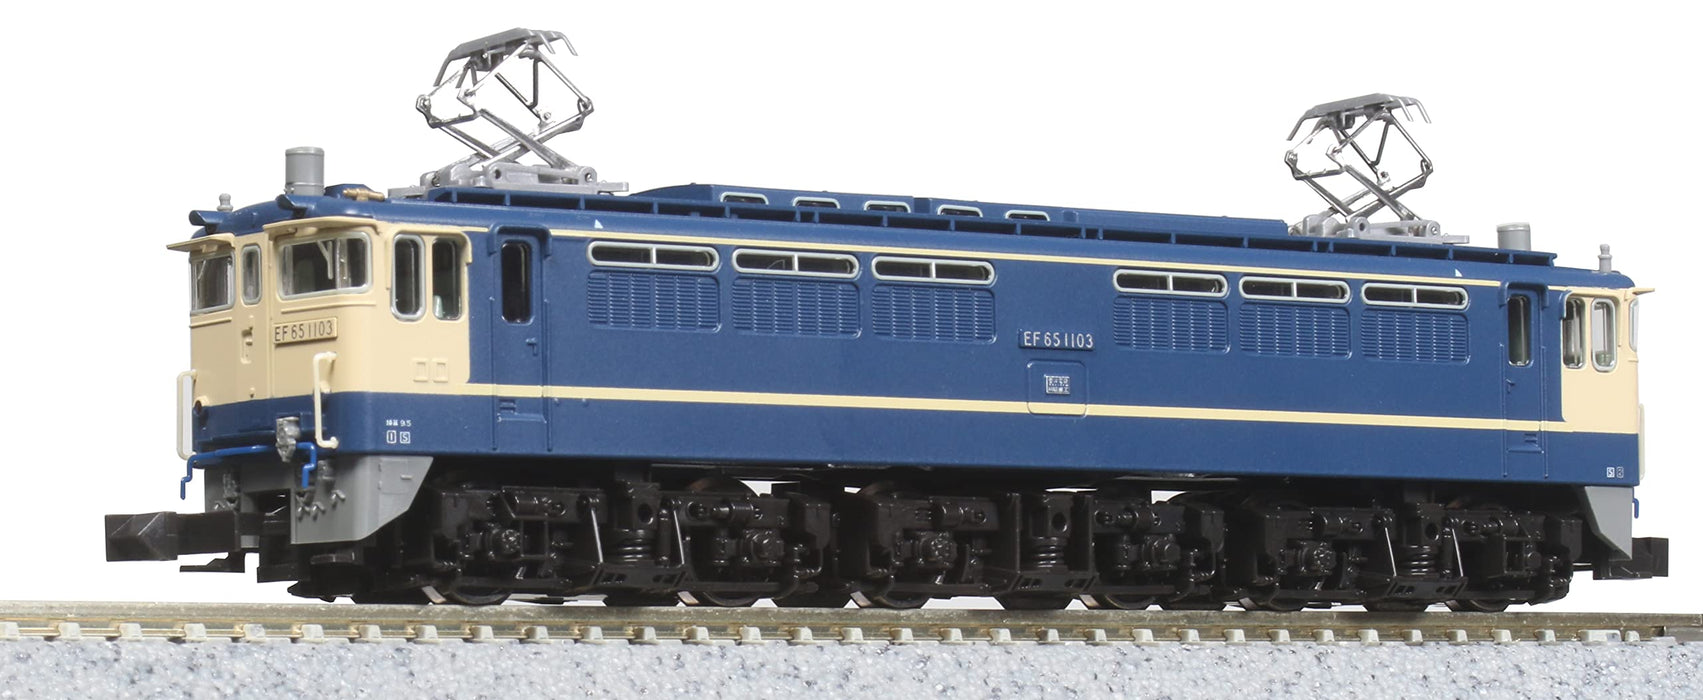 KATO 3061-1 Locomotive électrique Type Ef65-1000 Échelle de type N tardive